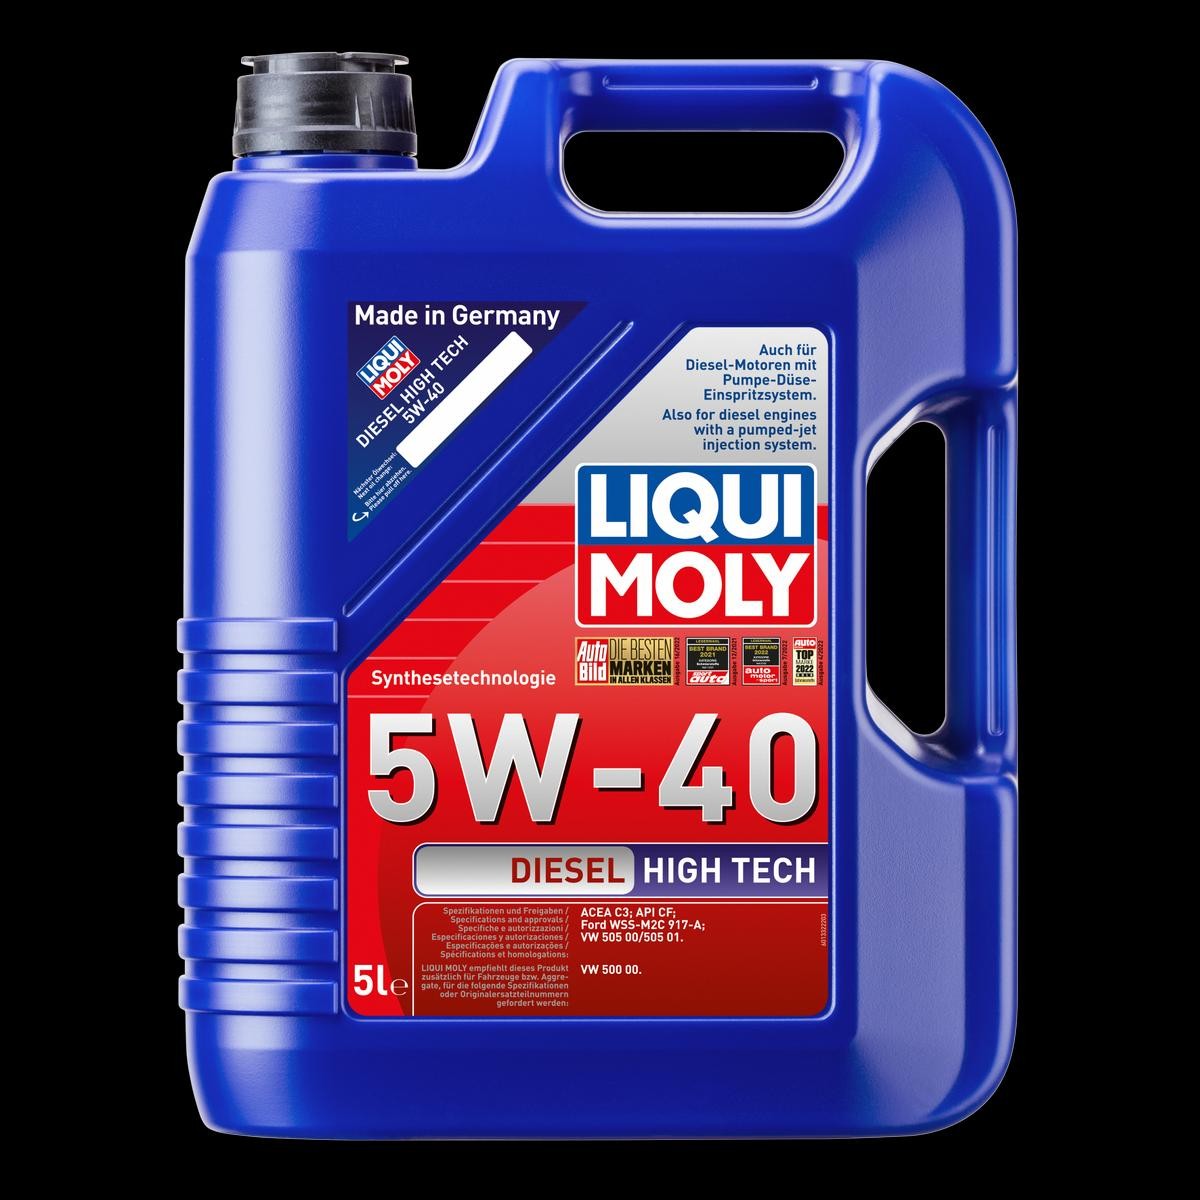 LIQUI MOLY Diesel High Tech 5W-40, 5l Motor oil 2696 buy